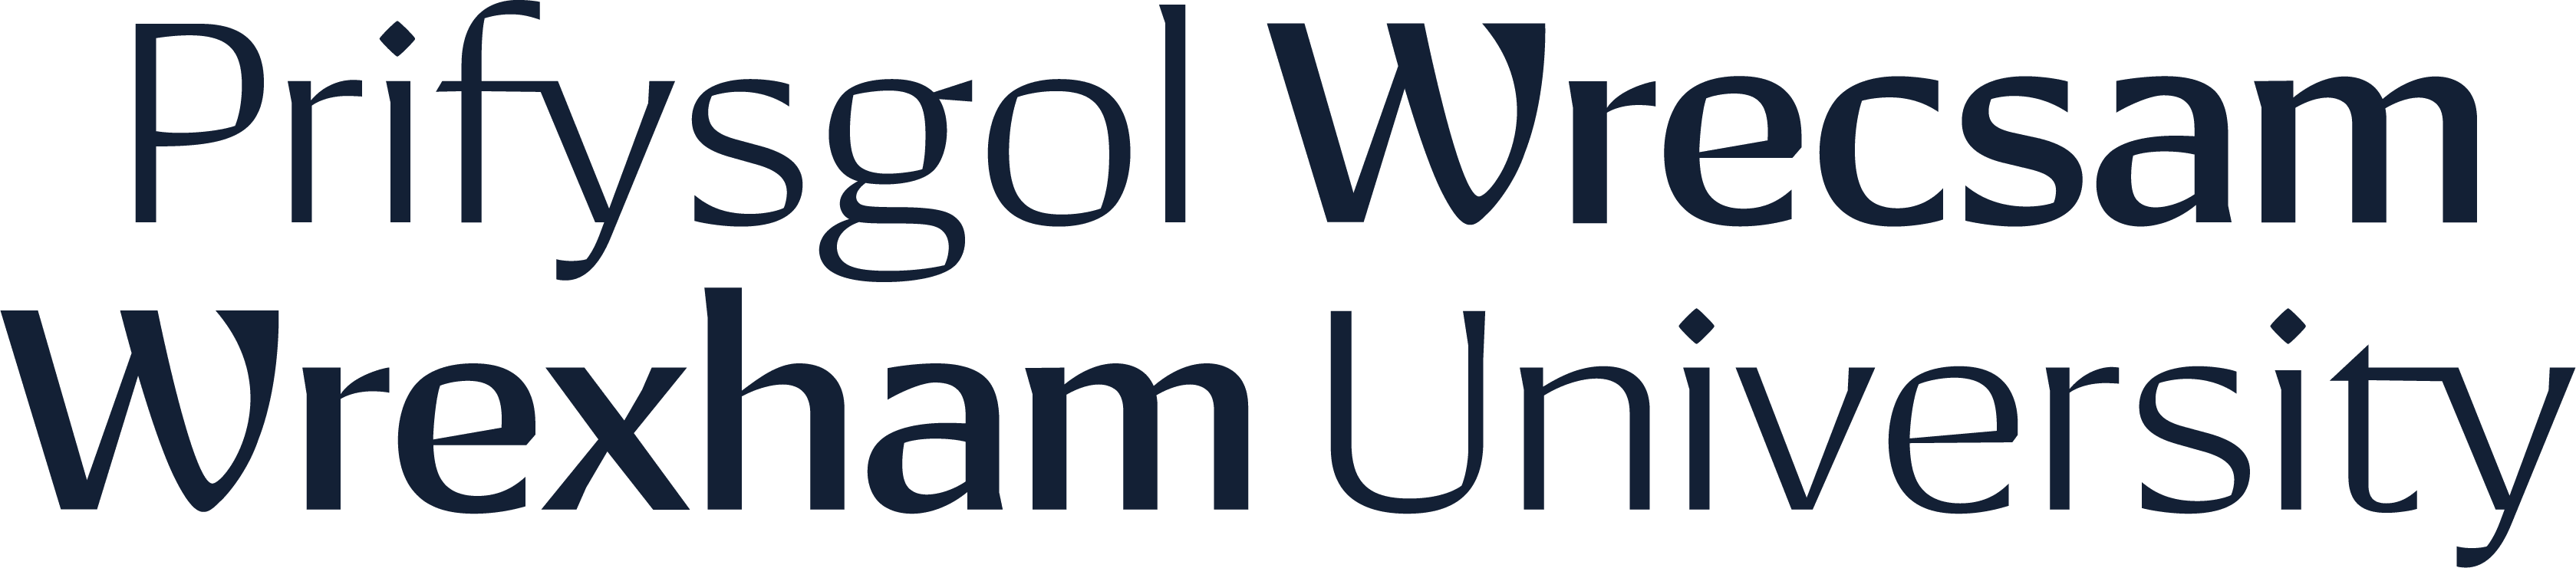 Prifysgol Wrecsam Wrexham University